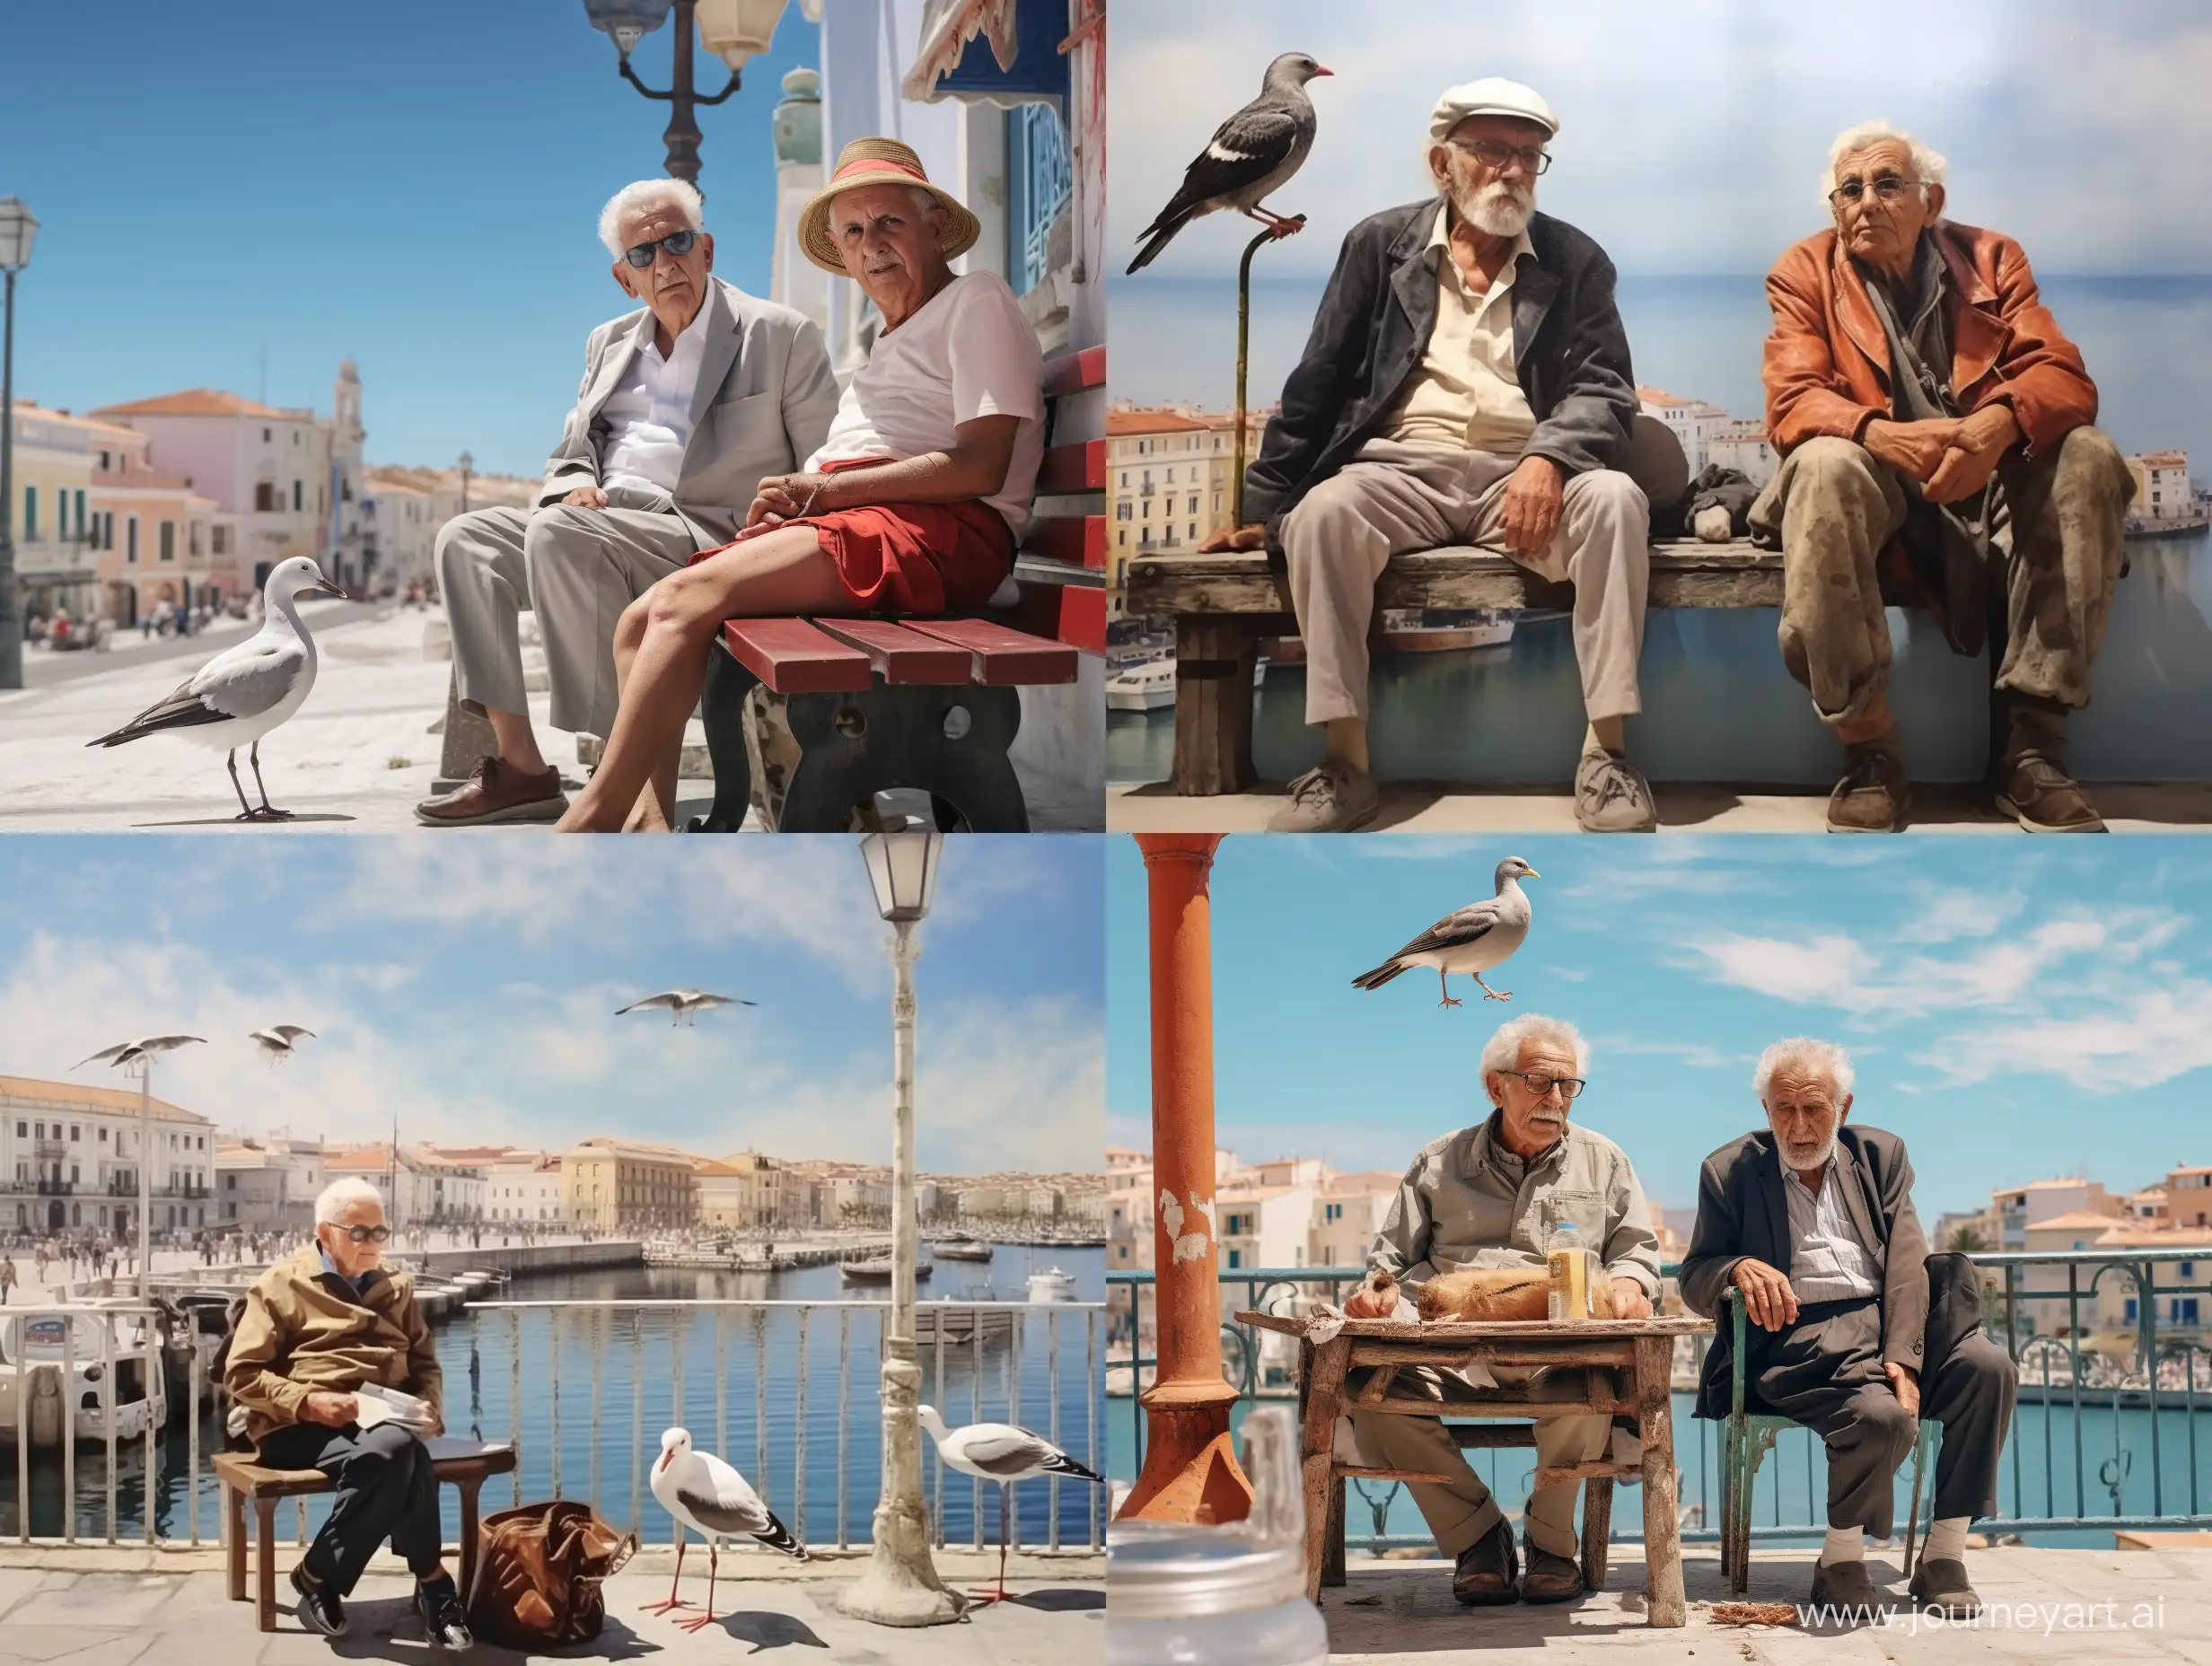 Старый Хорхе сидит на кнехте в порту перед ним летит чайка за спиной стоит старый испанец настоящие реализм фотокачество